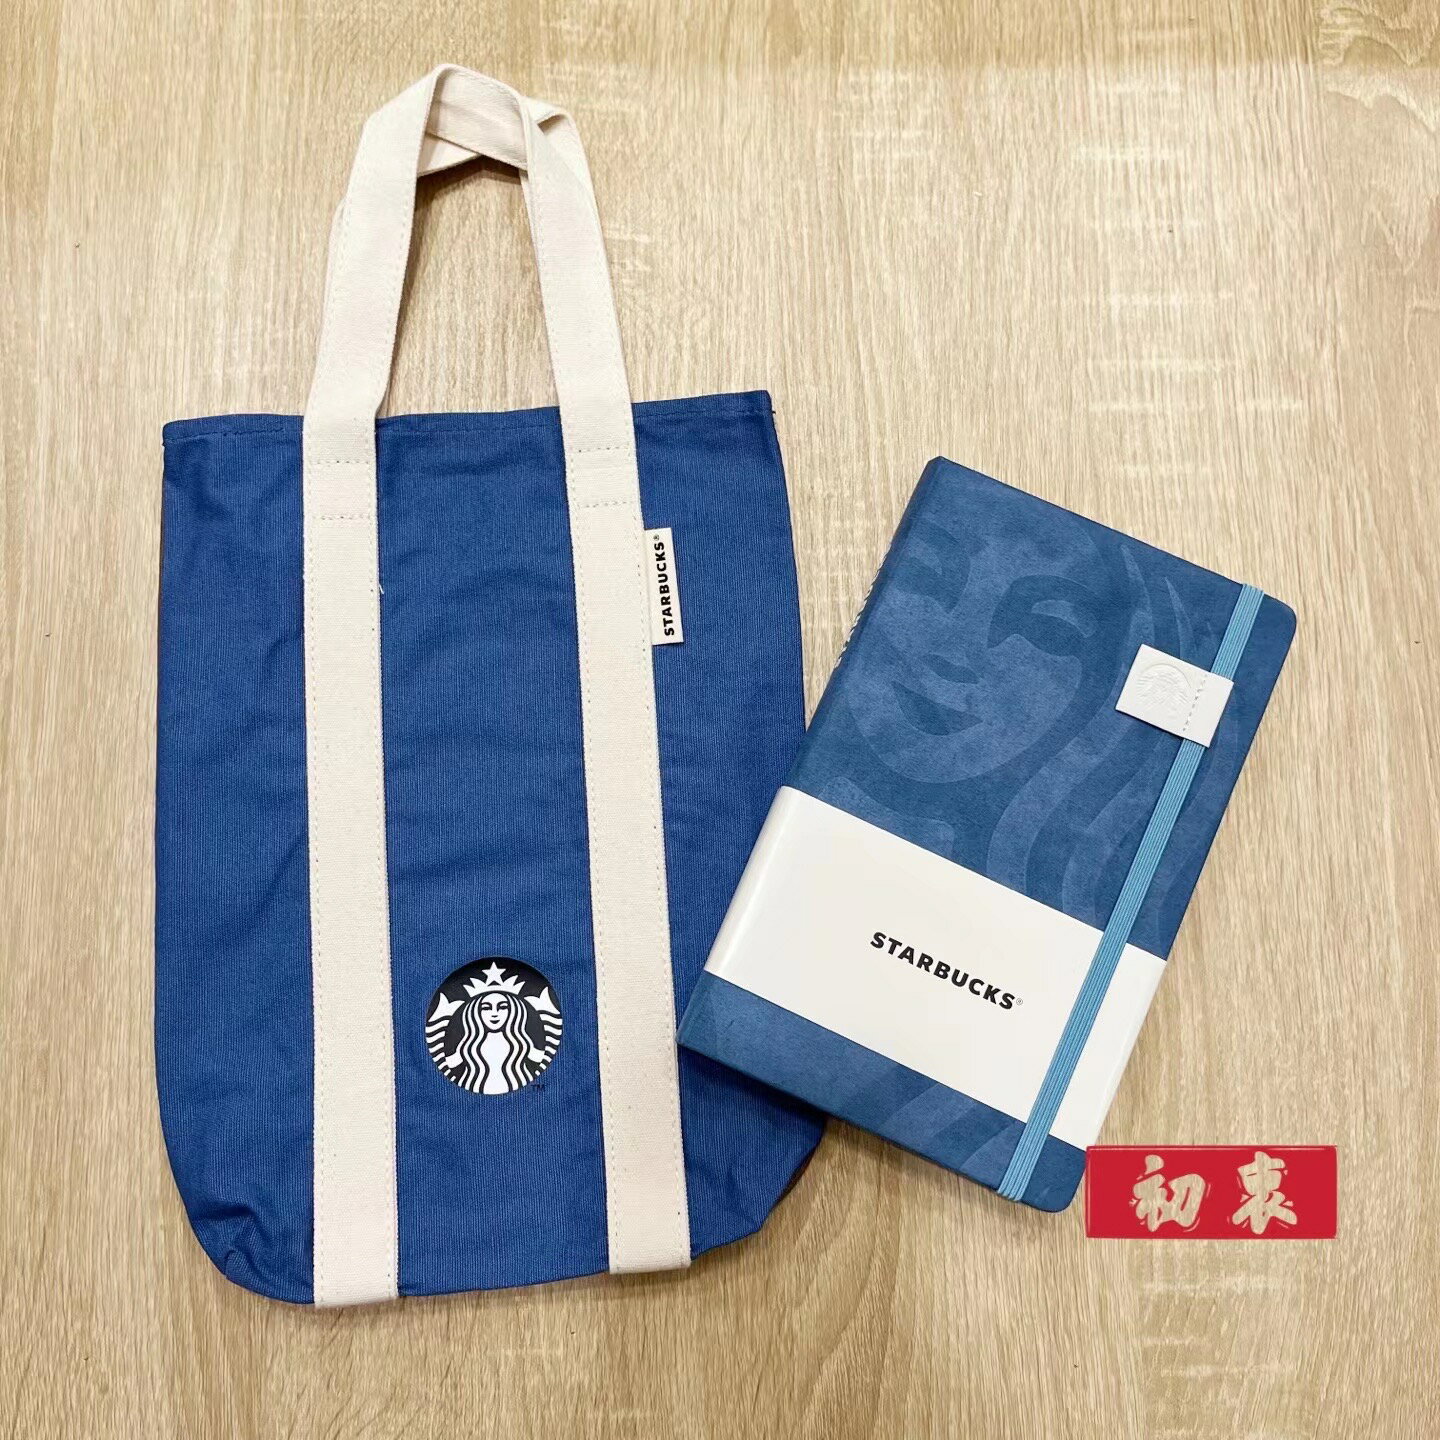 星巴克2023/Starbucks星巴克/年曆提袋組 淺藍 不含買一送一券